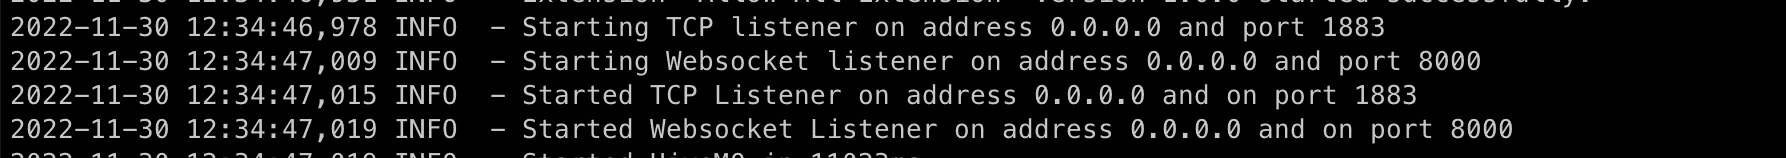 Verify a websocket listener is started on port 8000